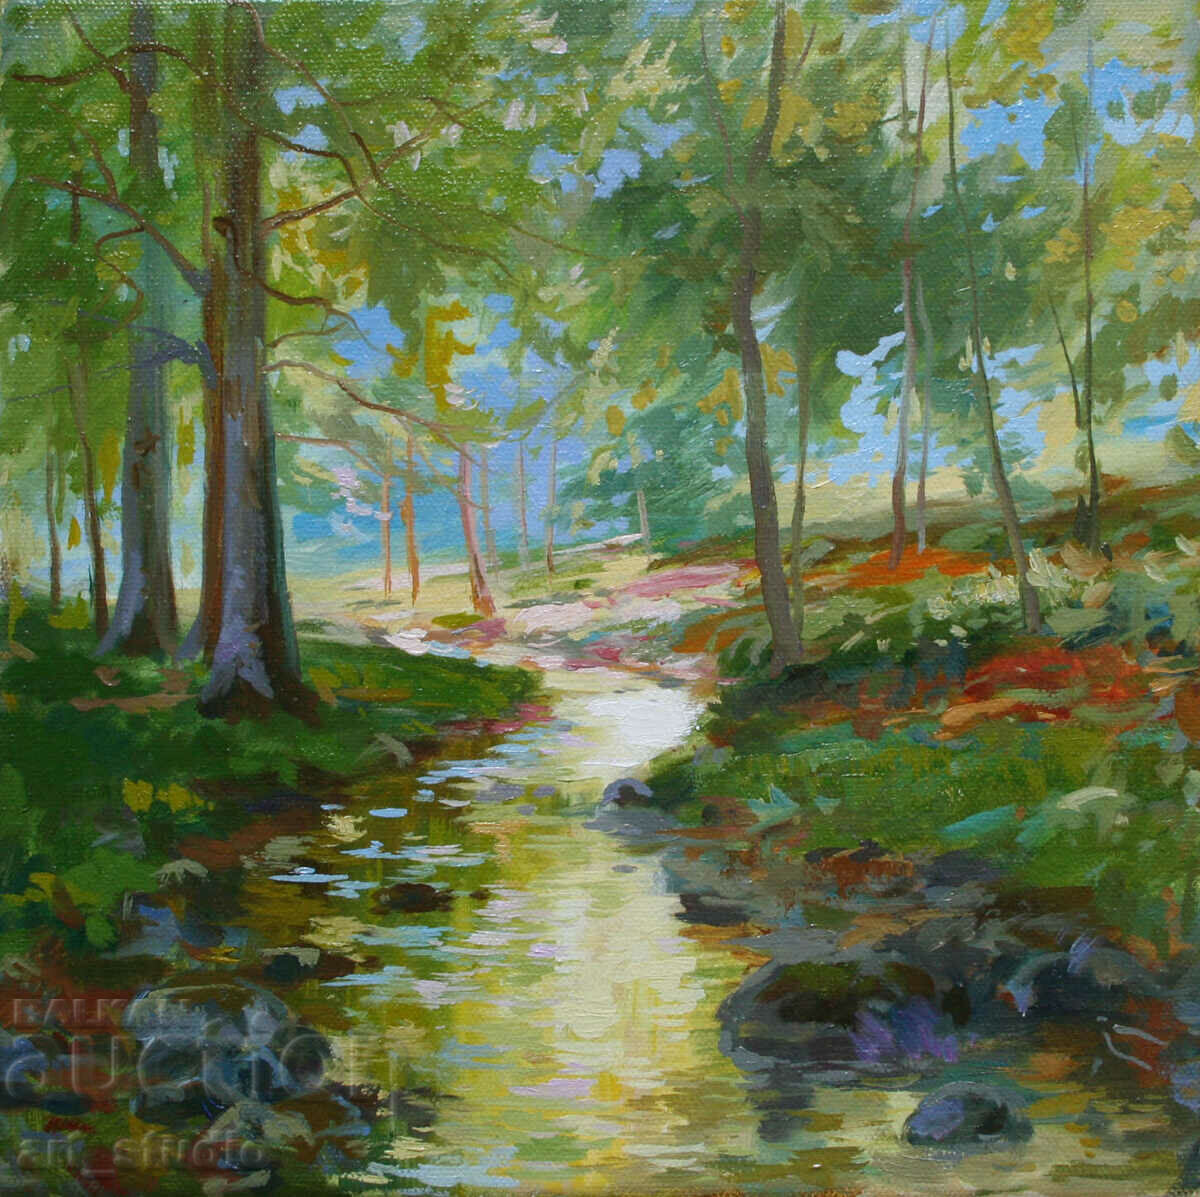 Landscape with a river - oil paints